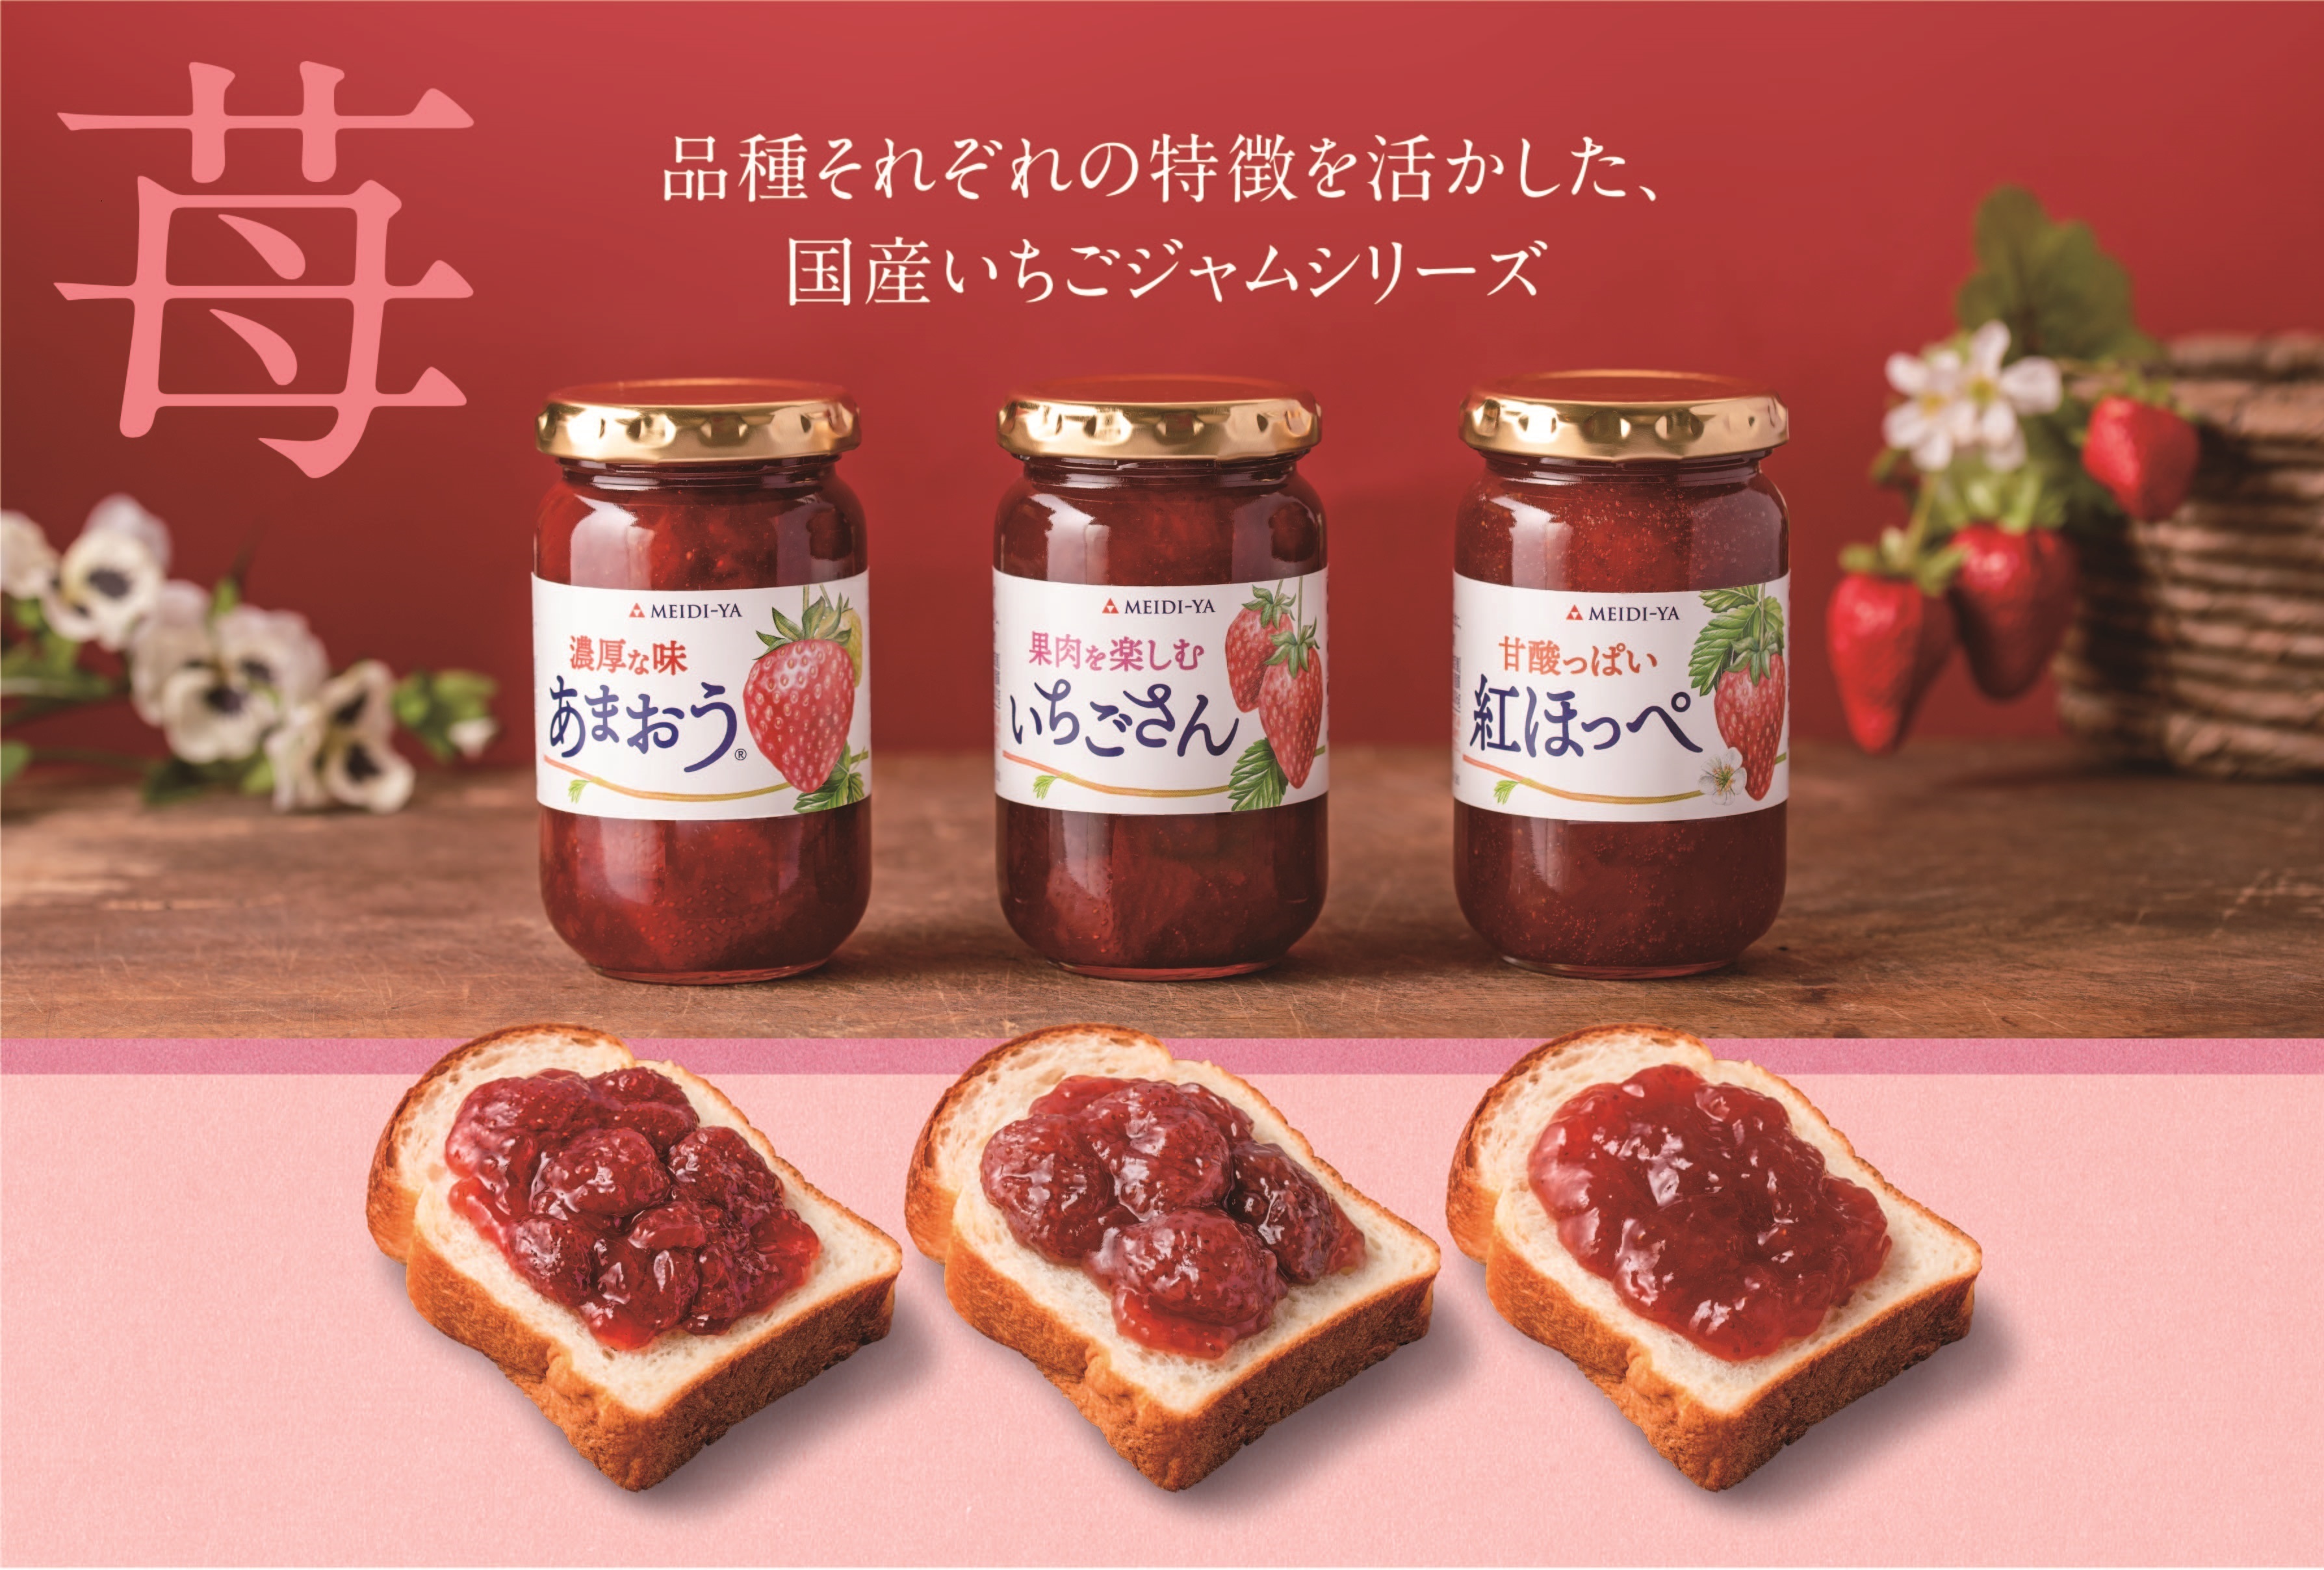 【発売開始】JR西日本グループのおみやげ専門店「おみやげ街道」で日本酒ブランド「ICHI-GO-CAN®」の販売を開始します